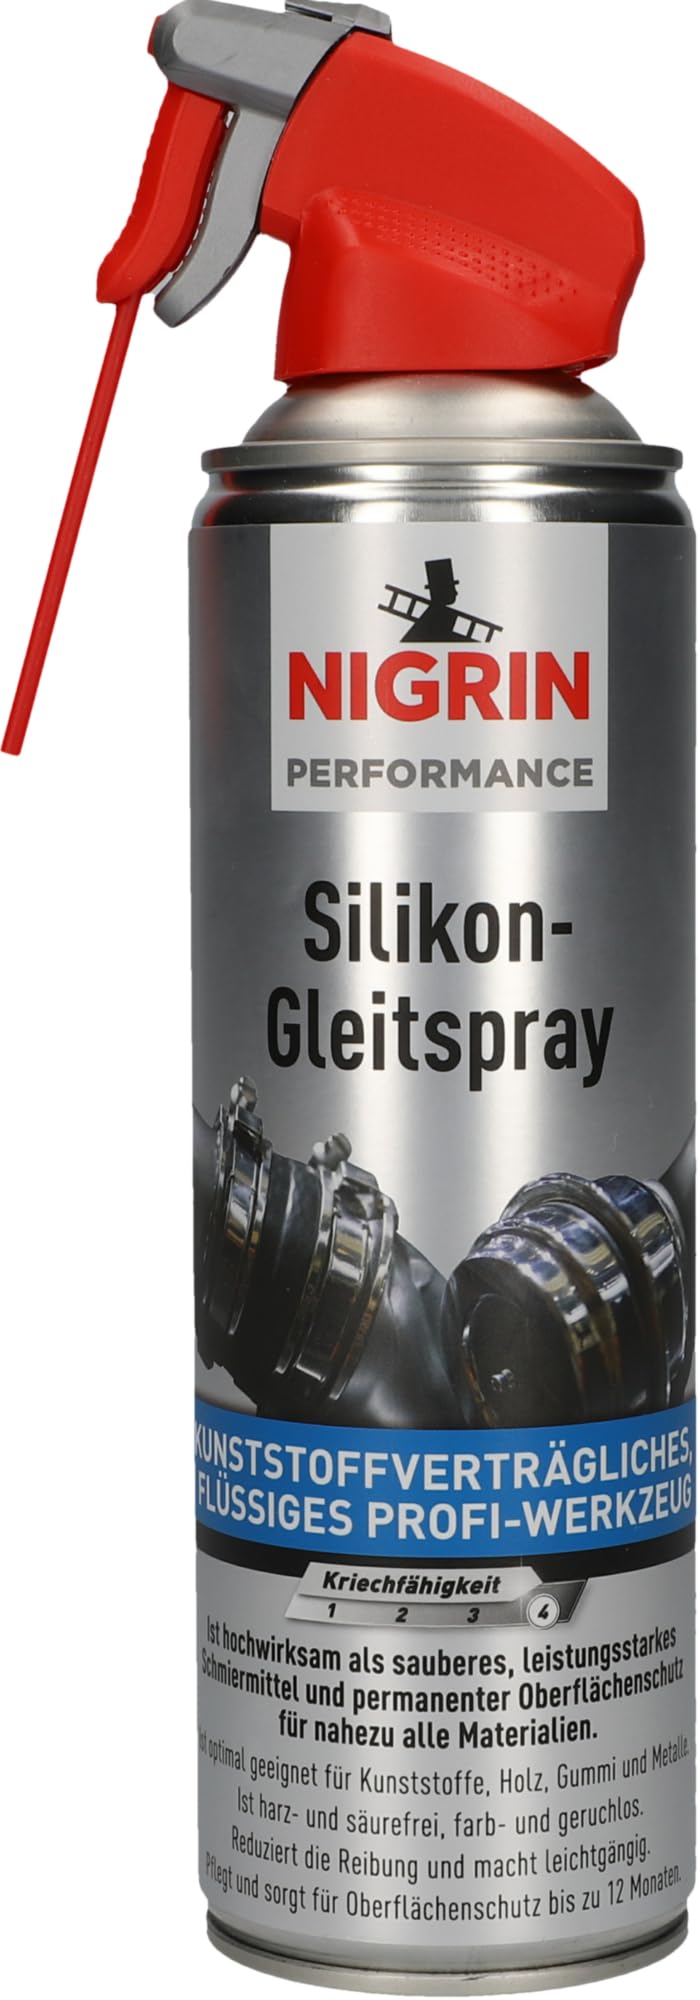 NIGRIN HyBrid Silikon-Gleitspray, kunststoffverträgliches, flüssiges Profi-Werkzeug, 500 ml von NIGRIN